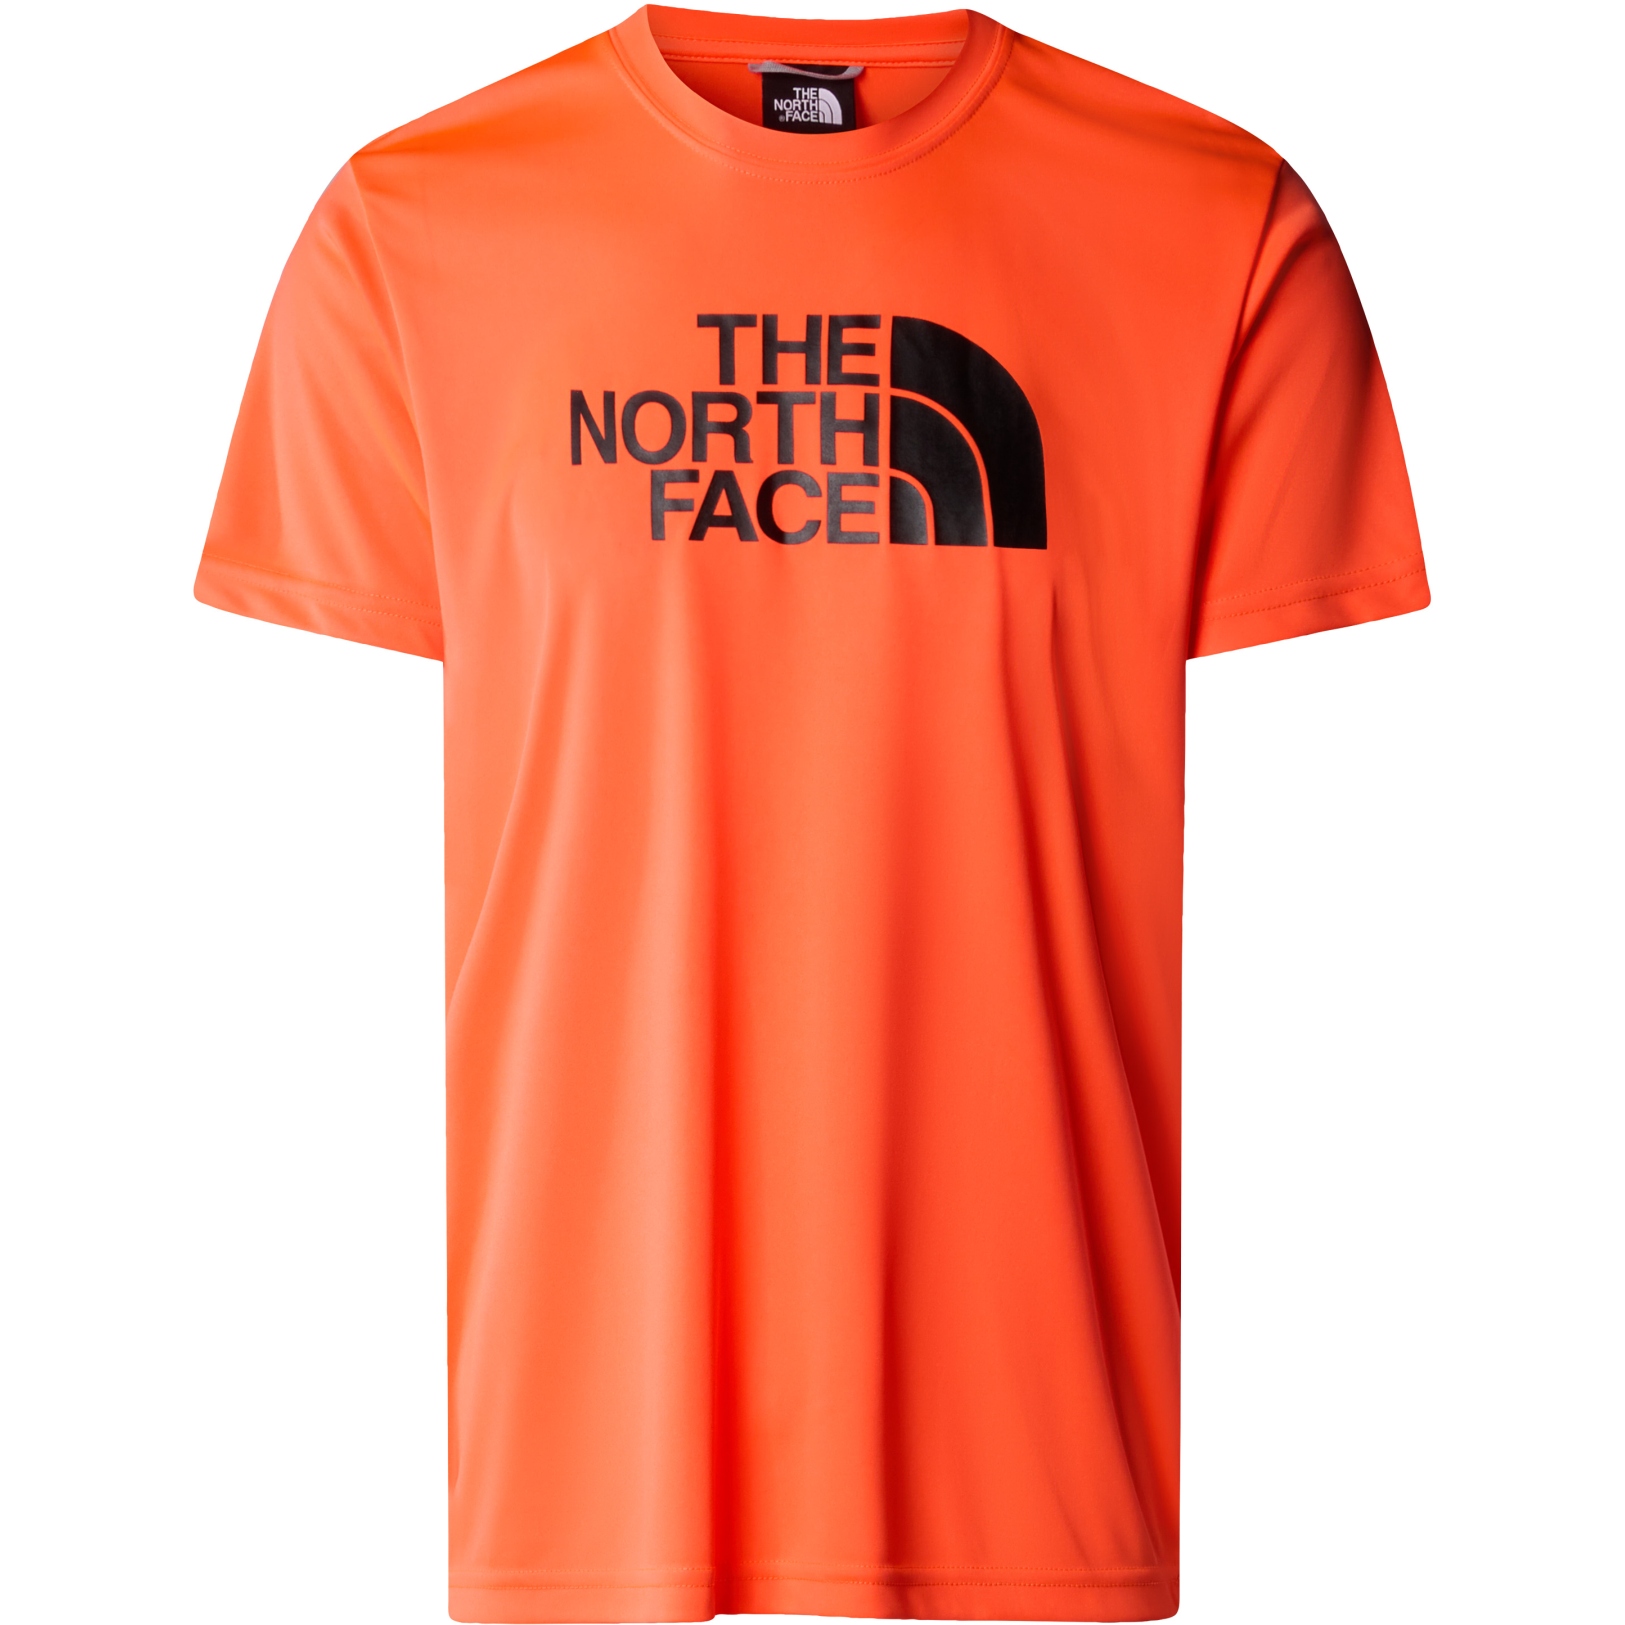 Produktbild von The North Face Reaxion Easy T-Shirt Herren - Vivid Flame